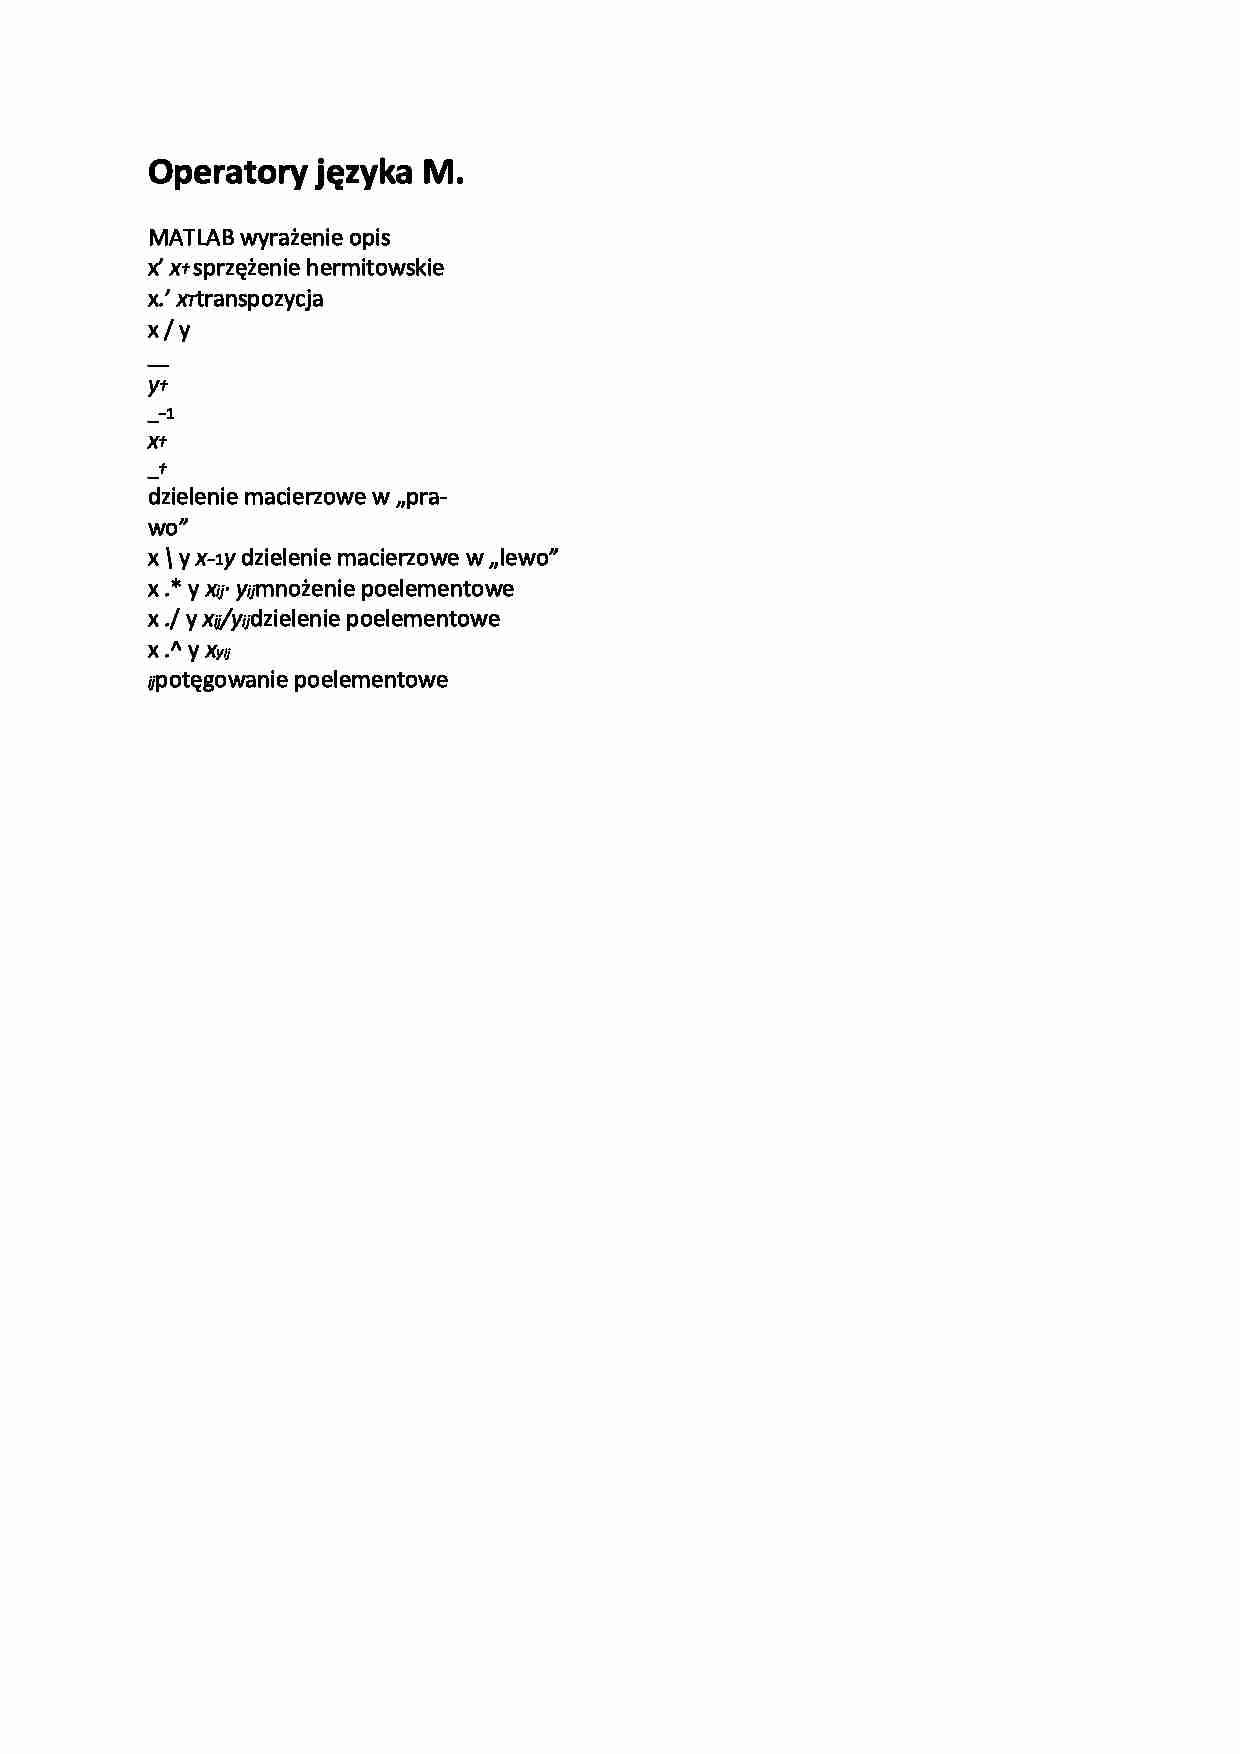 Operatory języka M - opracowanie - strona 1